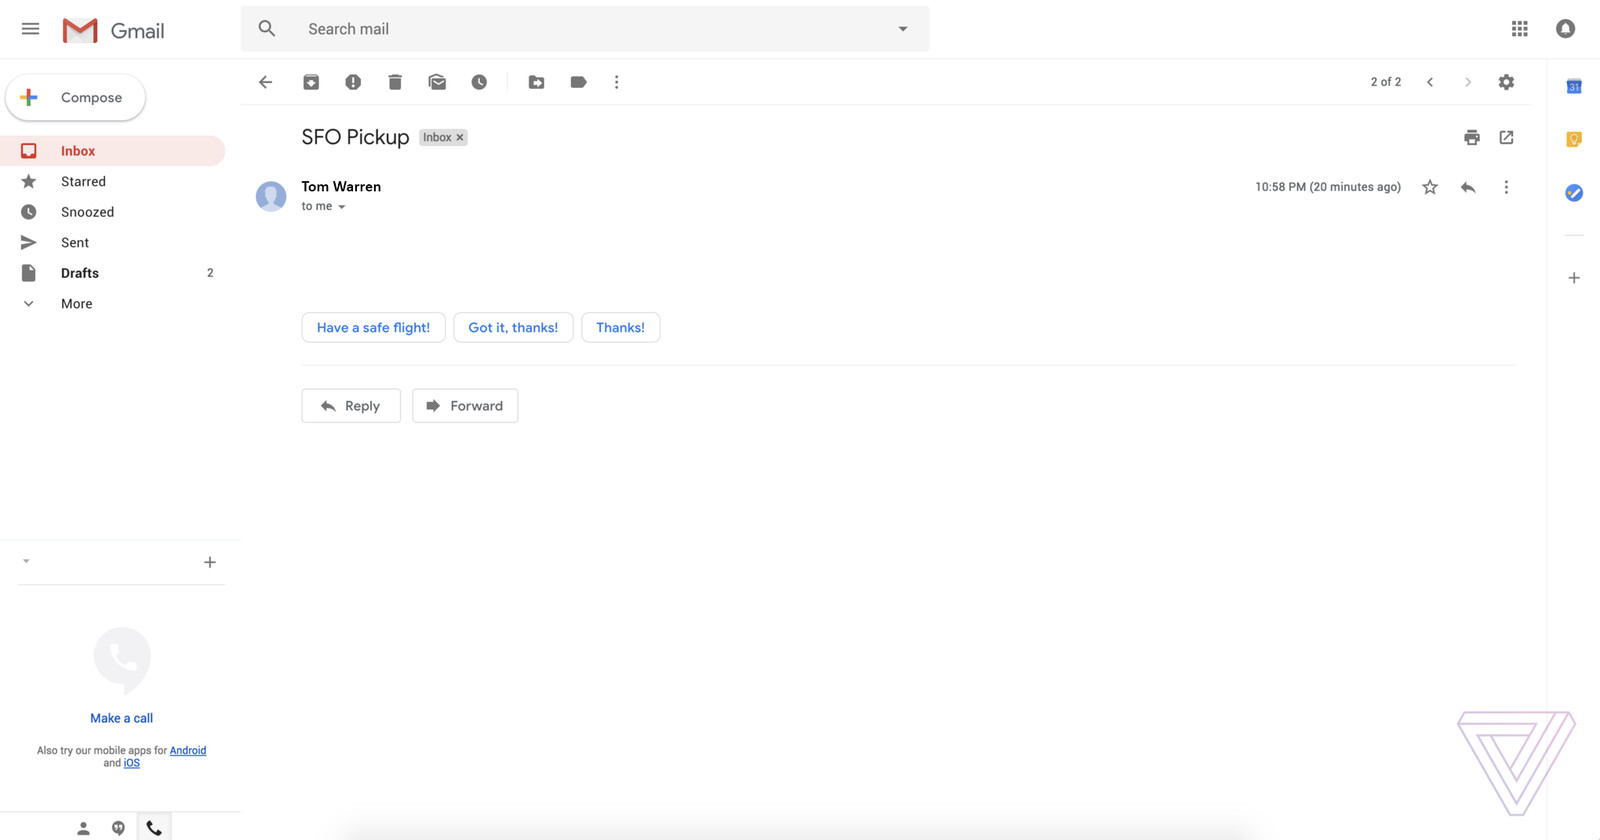 twarren gmaildesign 3